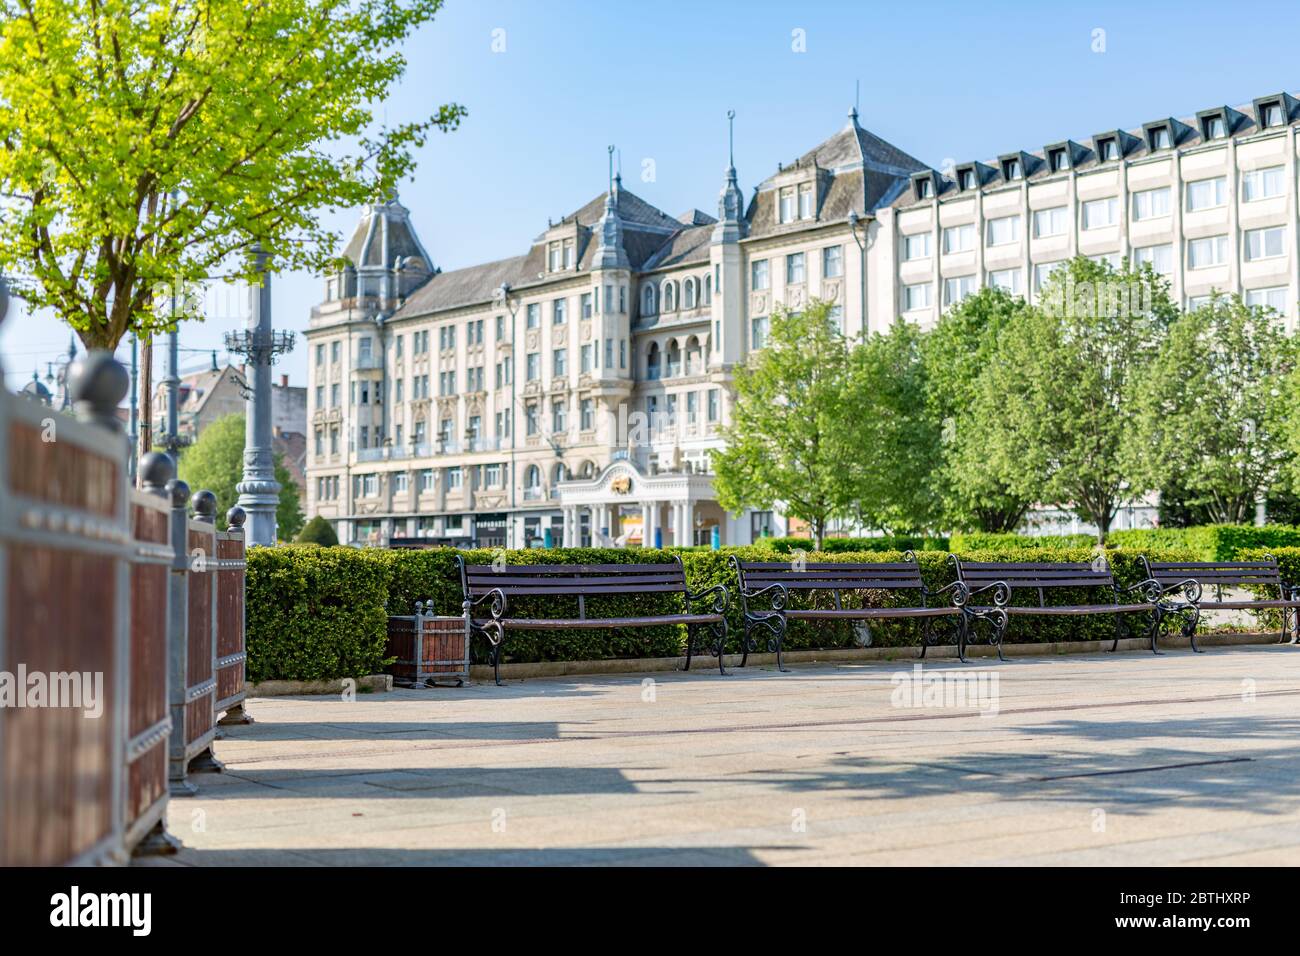 DEBRECEN, UNGARN - 23. AUGUST 2014: Das Grand Hotel Aranybika ist ein vier-Sterne-Hotel mit seiner Geschichte reicht bis in das späte 17. Jahrhundert zurück, aber die heutige Stockfoto